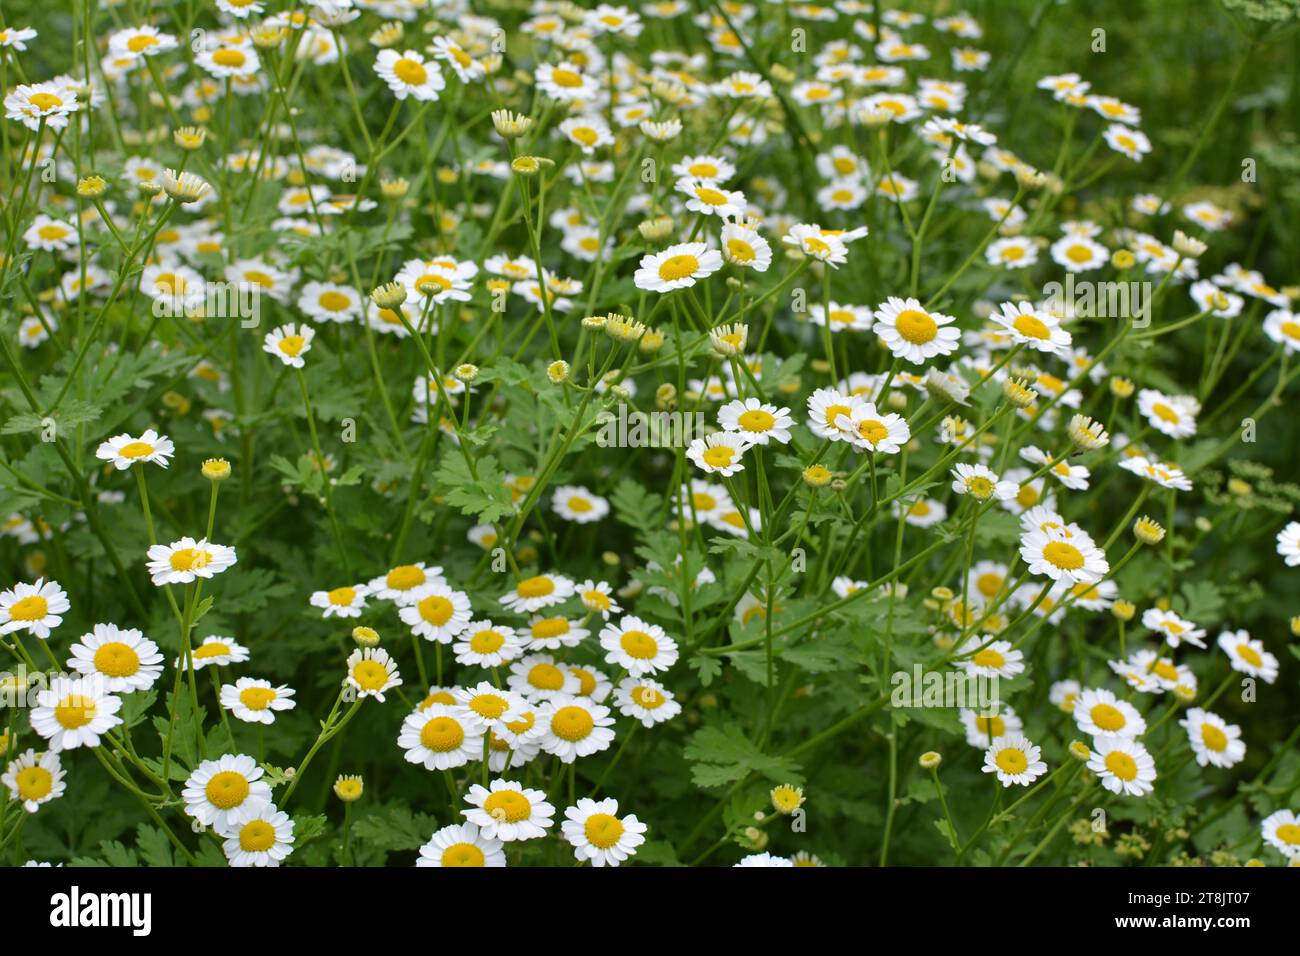 In summer, Tanacetum parthenium blooms in nature Stock Photo